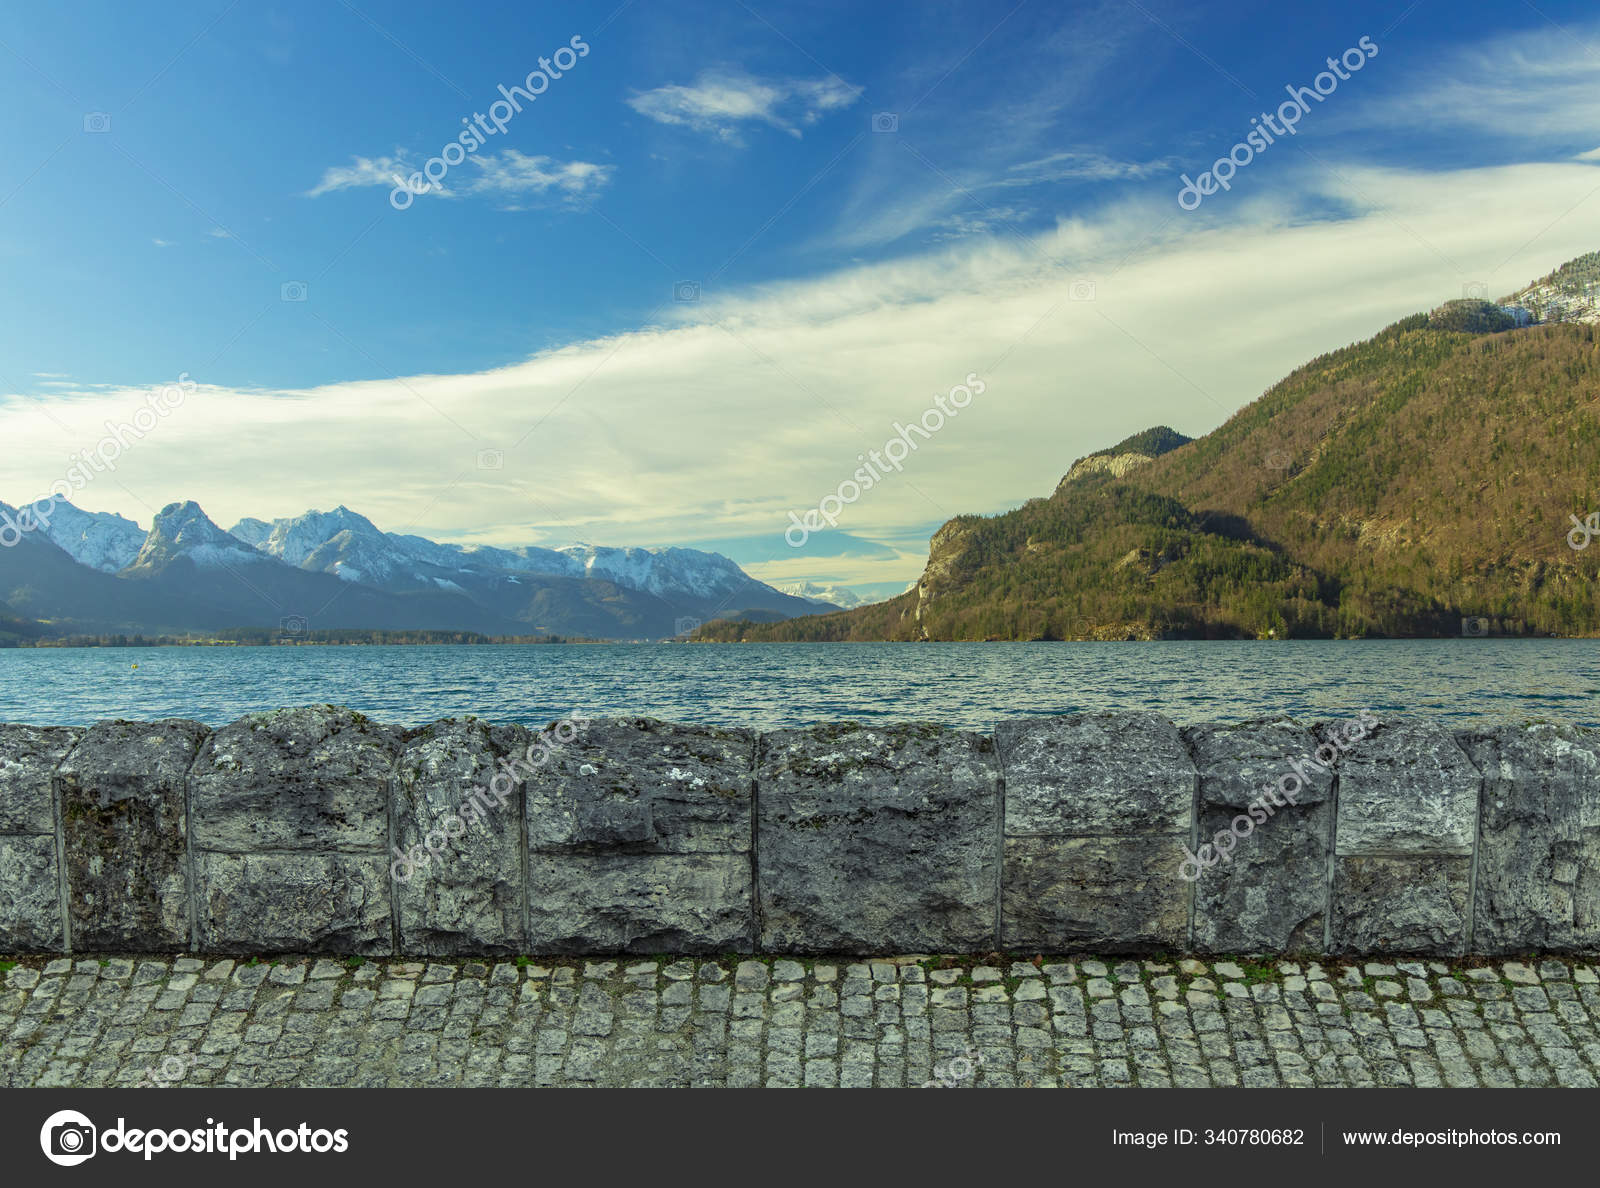 絵のような自然壁紙パターン石舗装道路や壁の前景フレームの概念平和的な湖の水とアルプスの山の風景背景青空白い雲 コピースペース ストック写真 C Artemknyaz